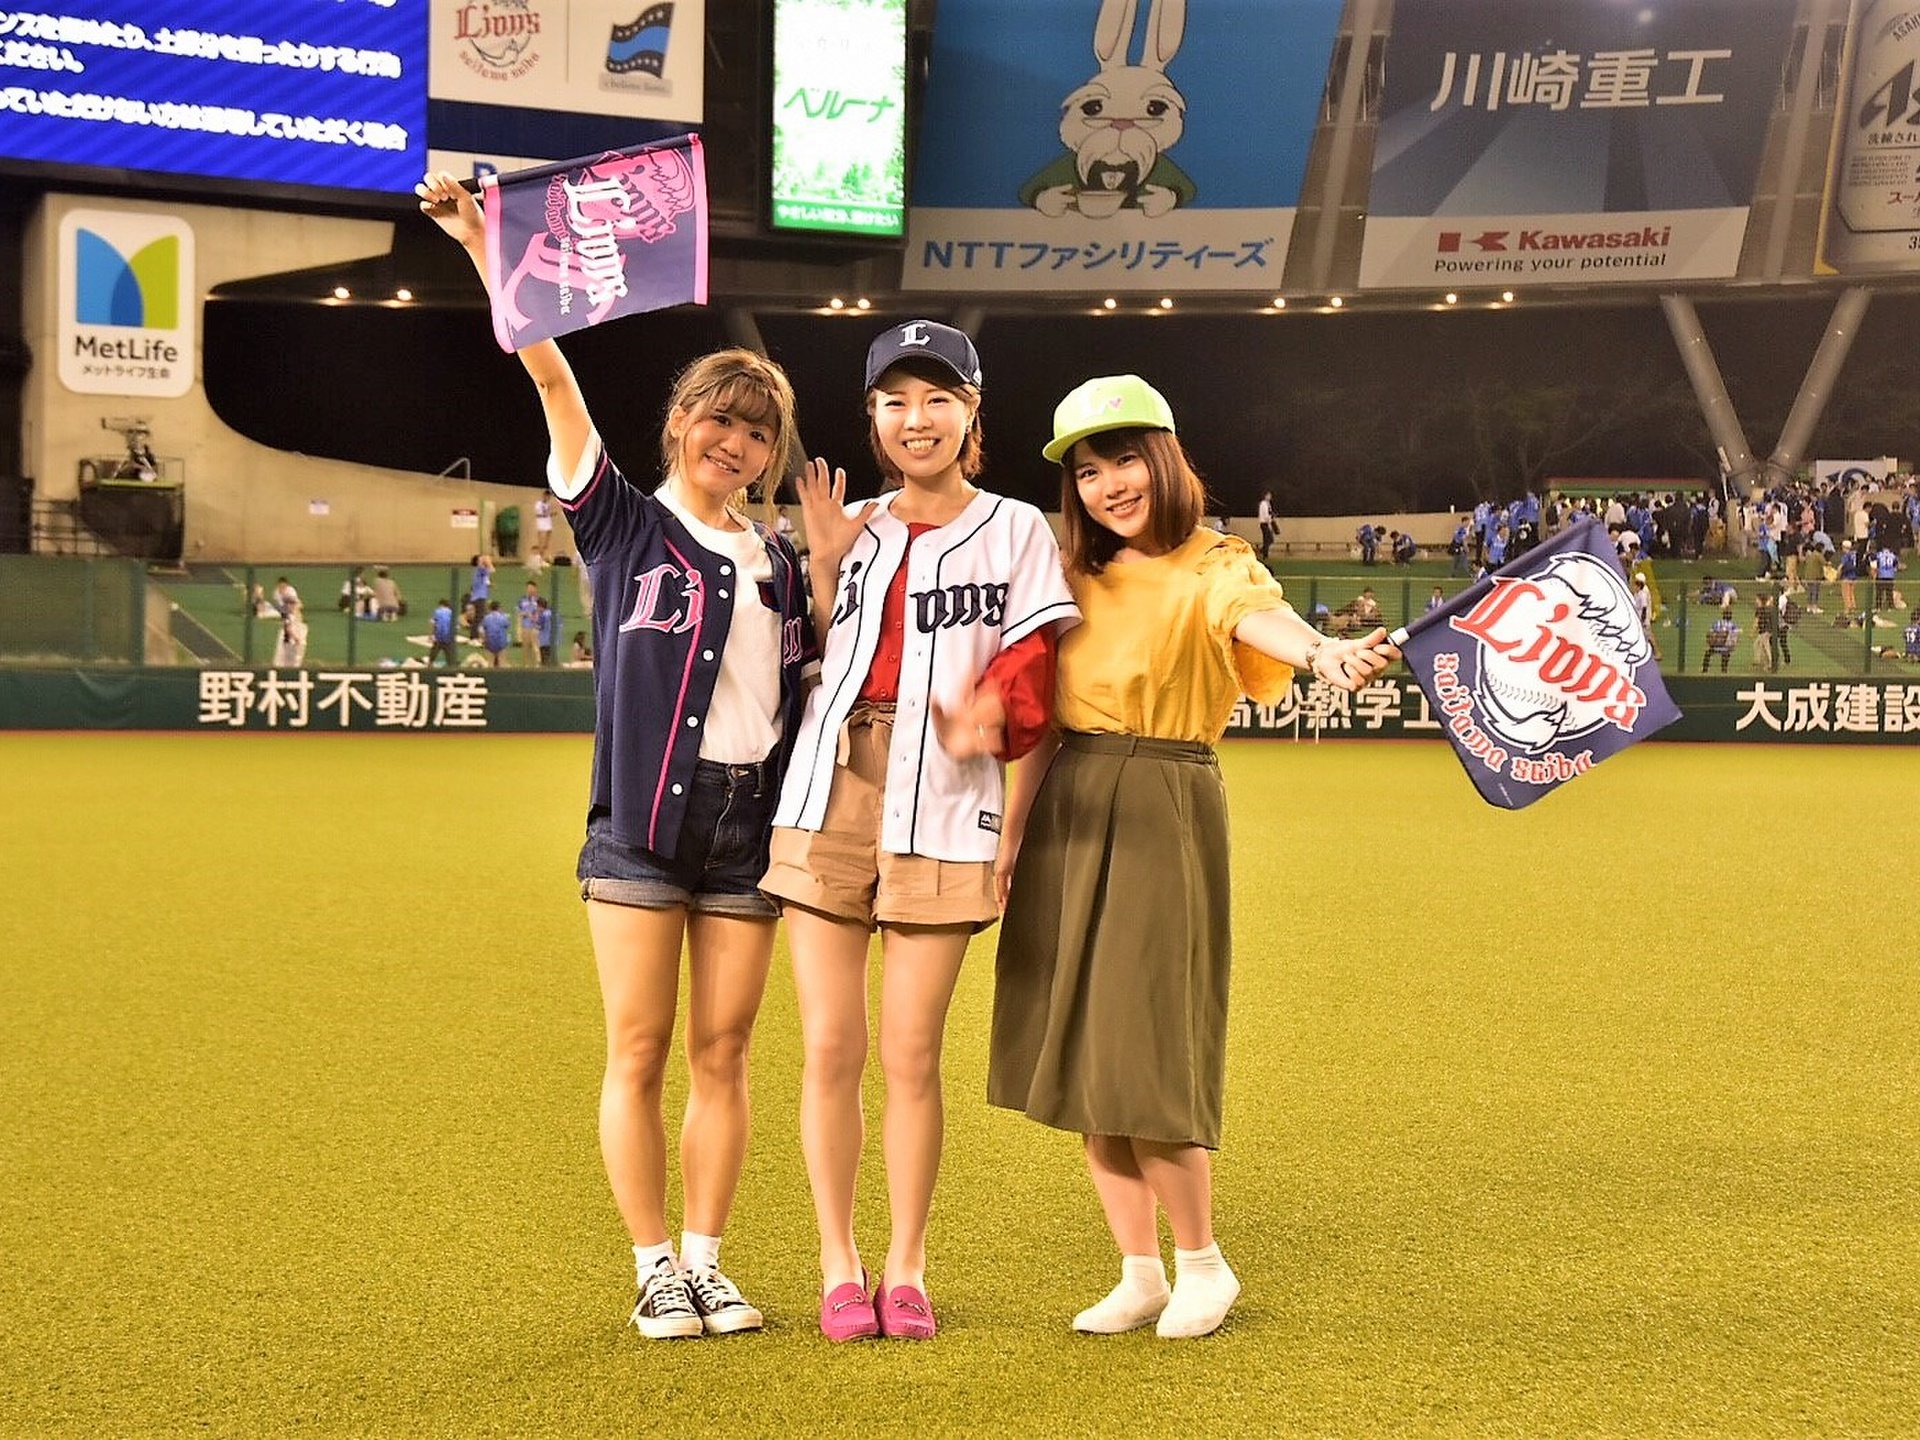 想像を超えた､楽しすぎる野球場「埼玉のメットライフドーム」で女子会をしよう！♡